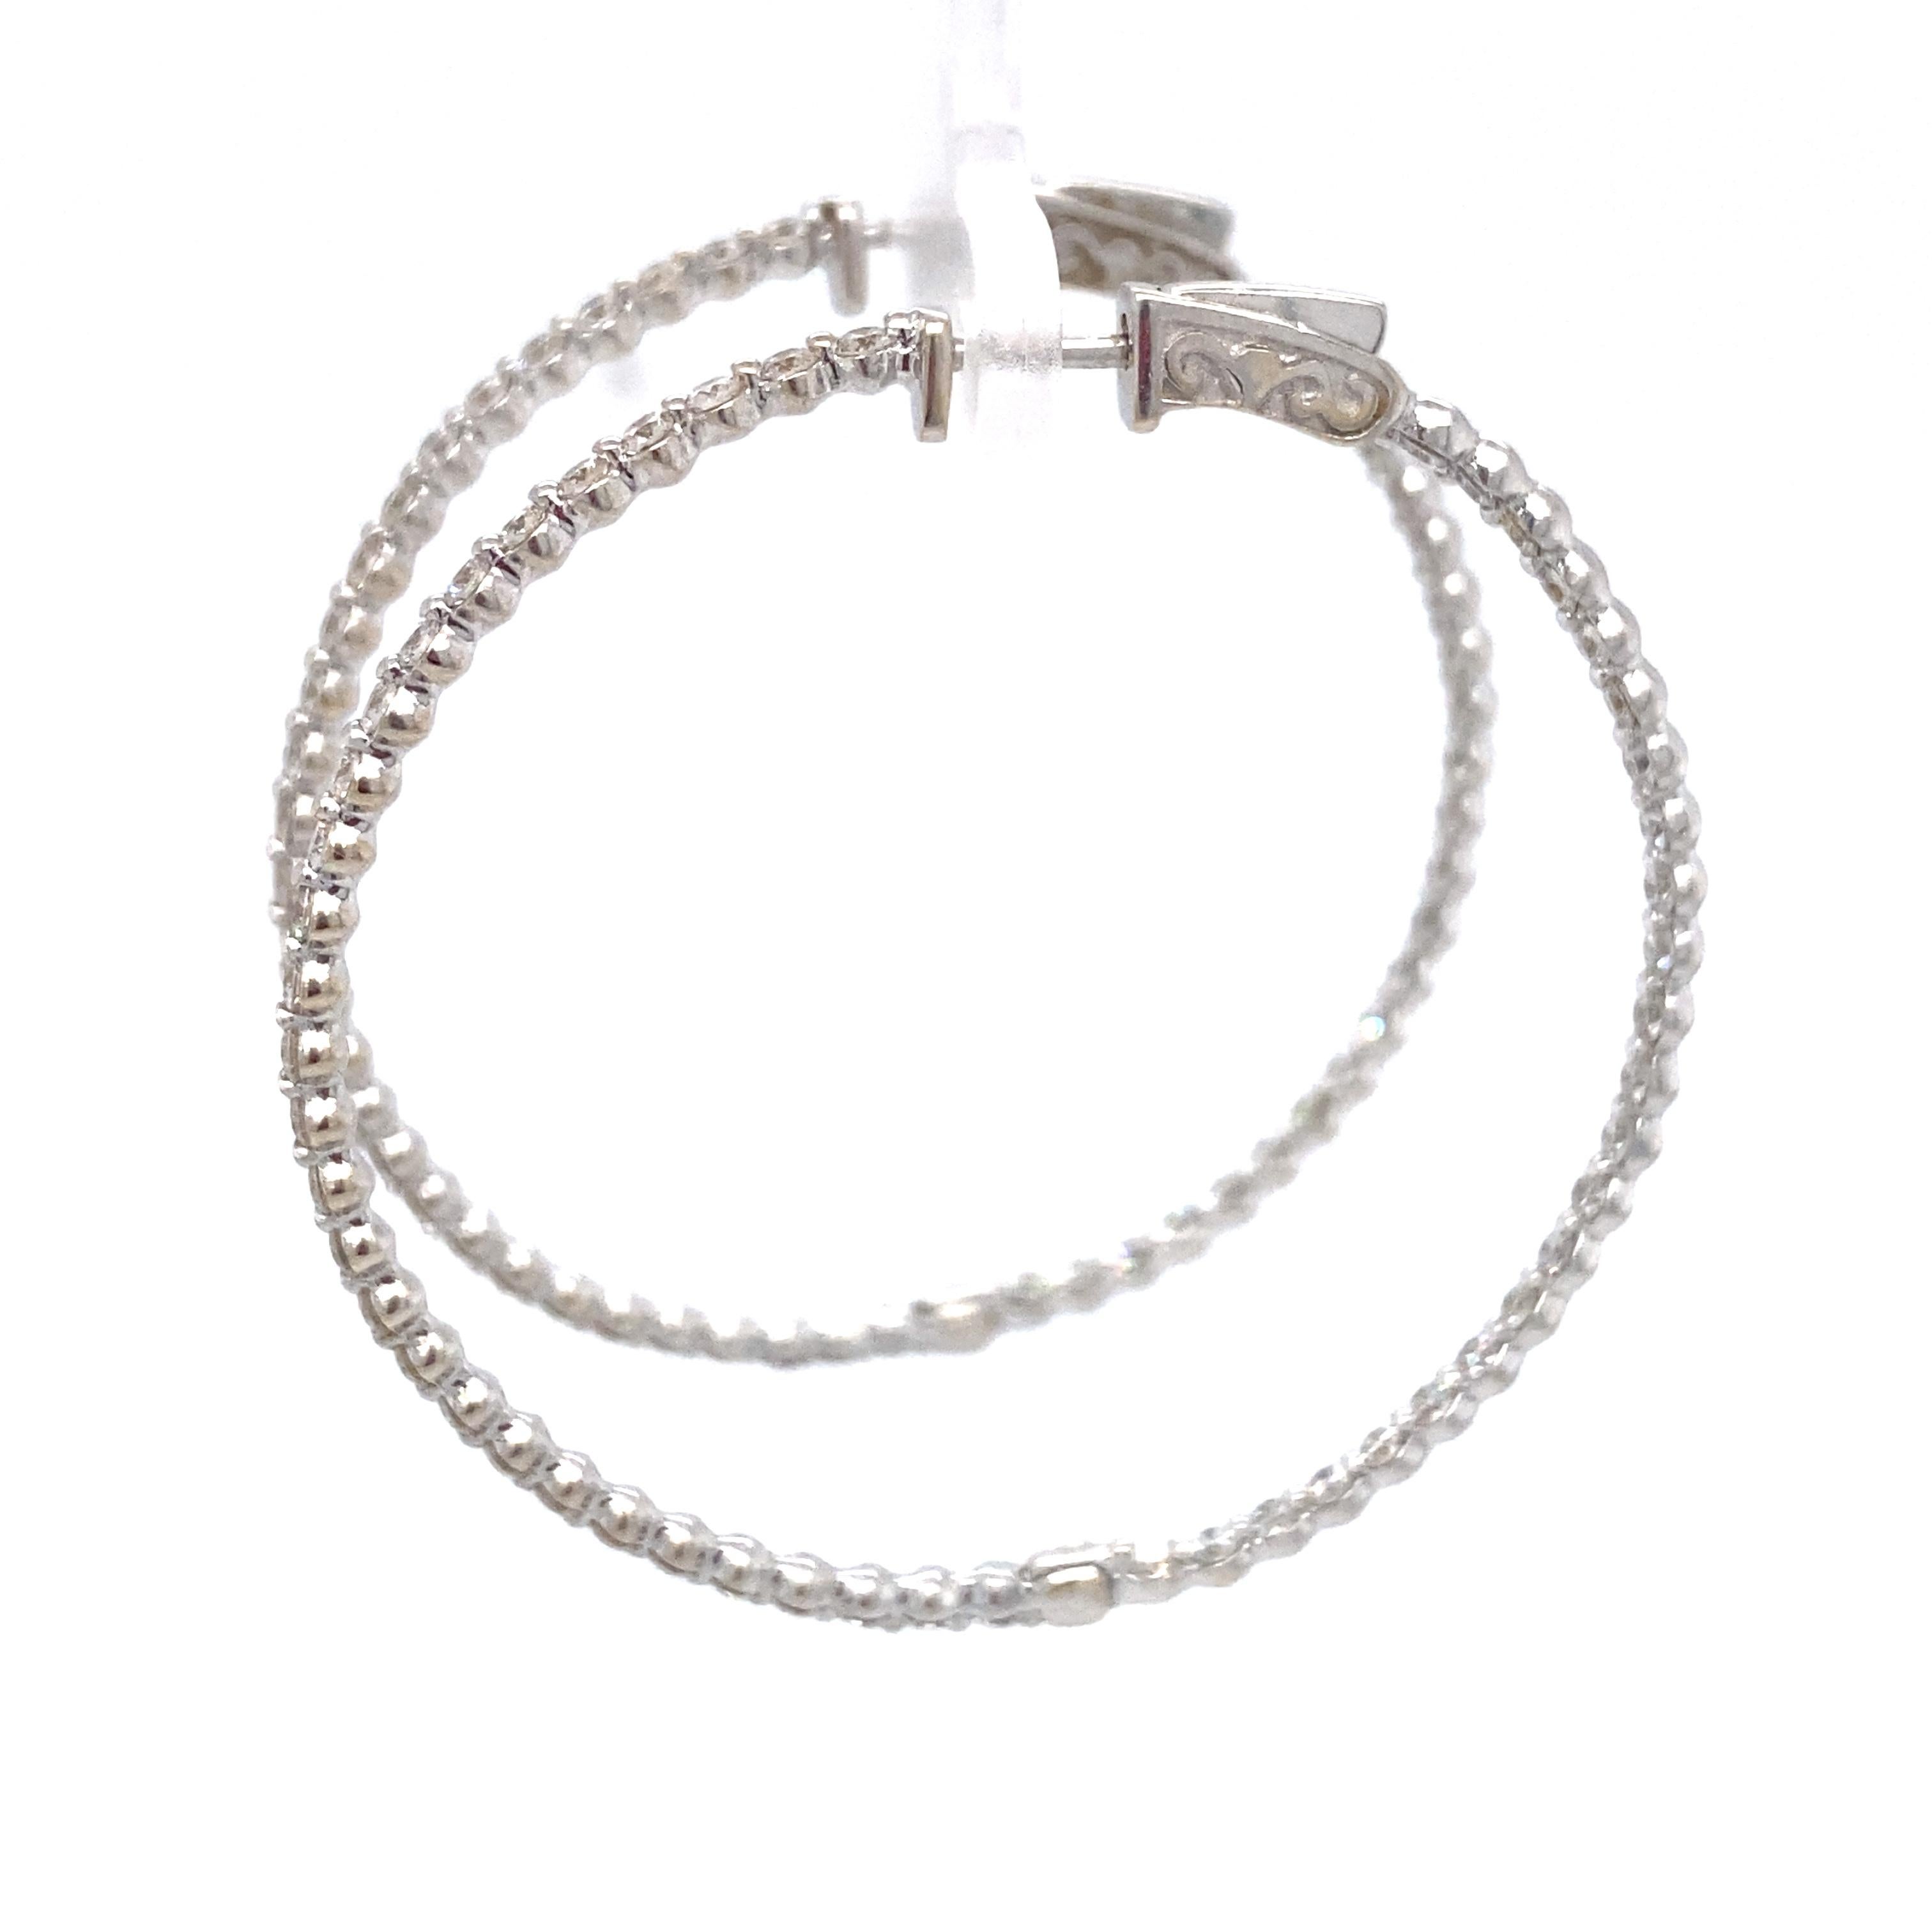 2.60 Carat Inside Out Diamond Hoop Earrings in 18 Karat White Gold For Sale 1